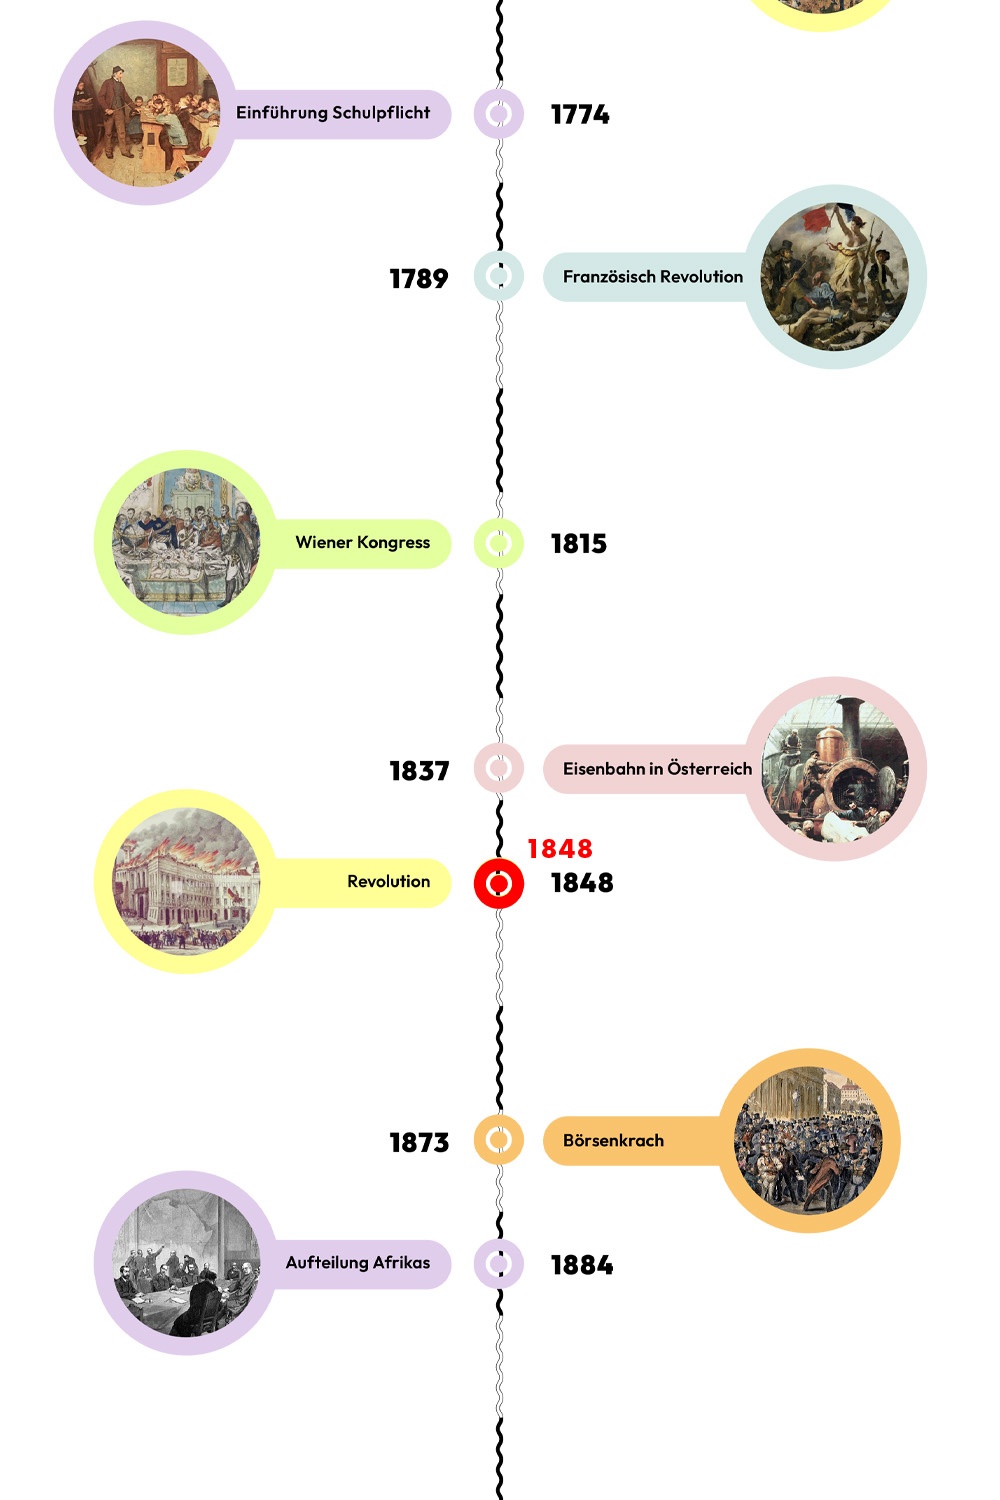 Zeitstrahl mit historischen Ereignissen - 1848 ist hervorgehoben. © wasbishergeschah.at